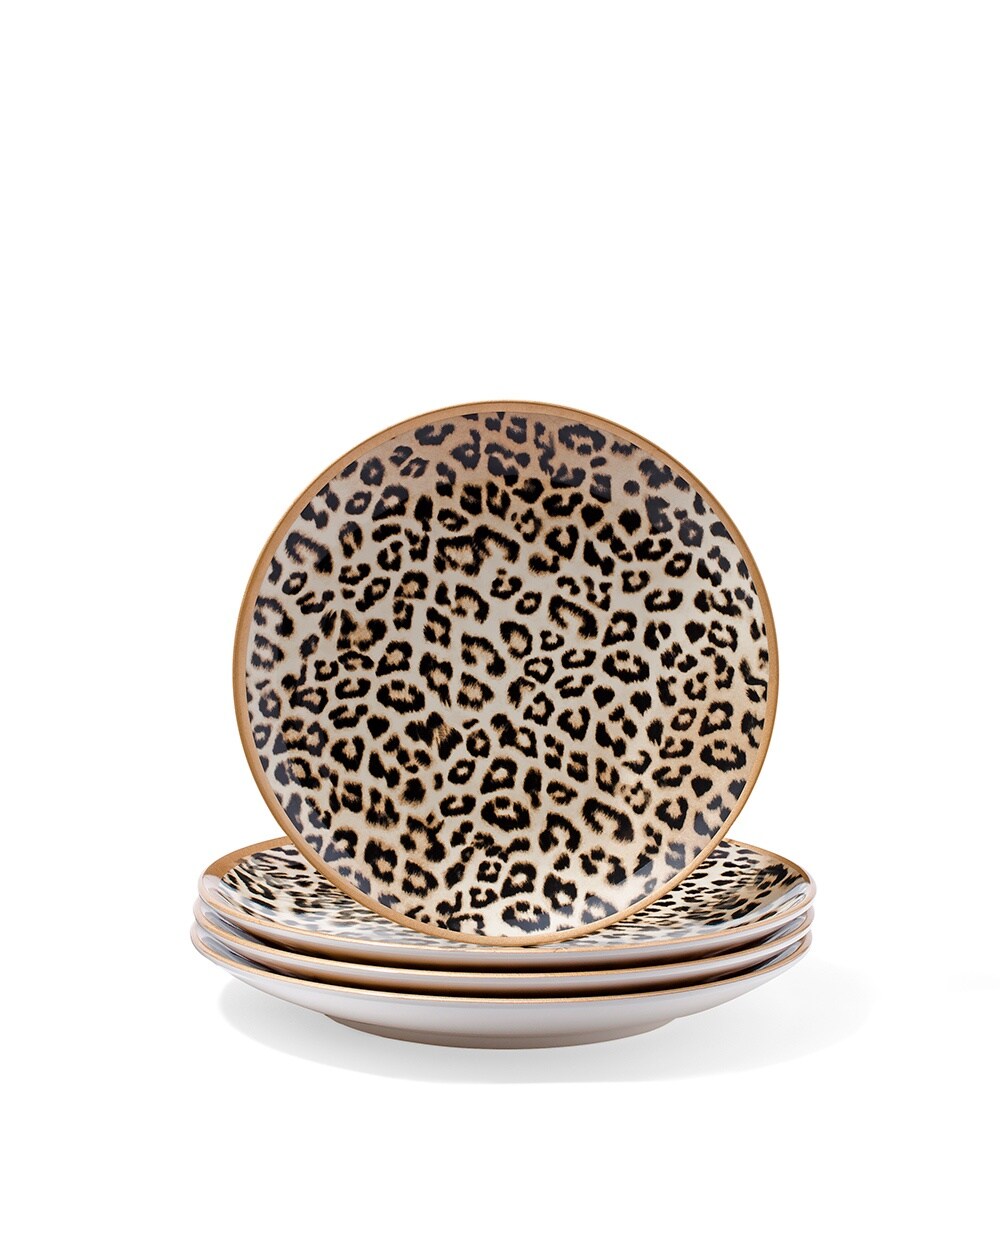 Leopard-Print Dessert Plate Set